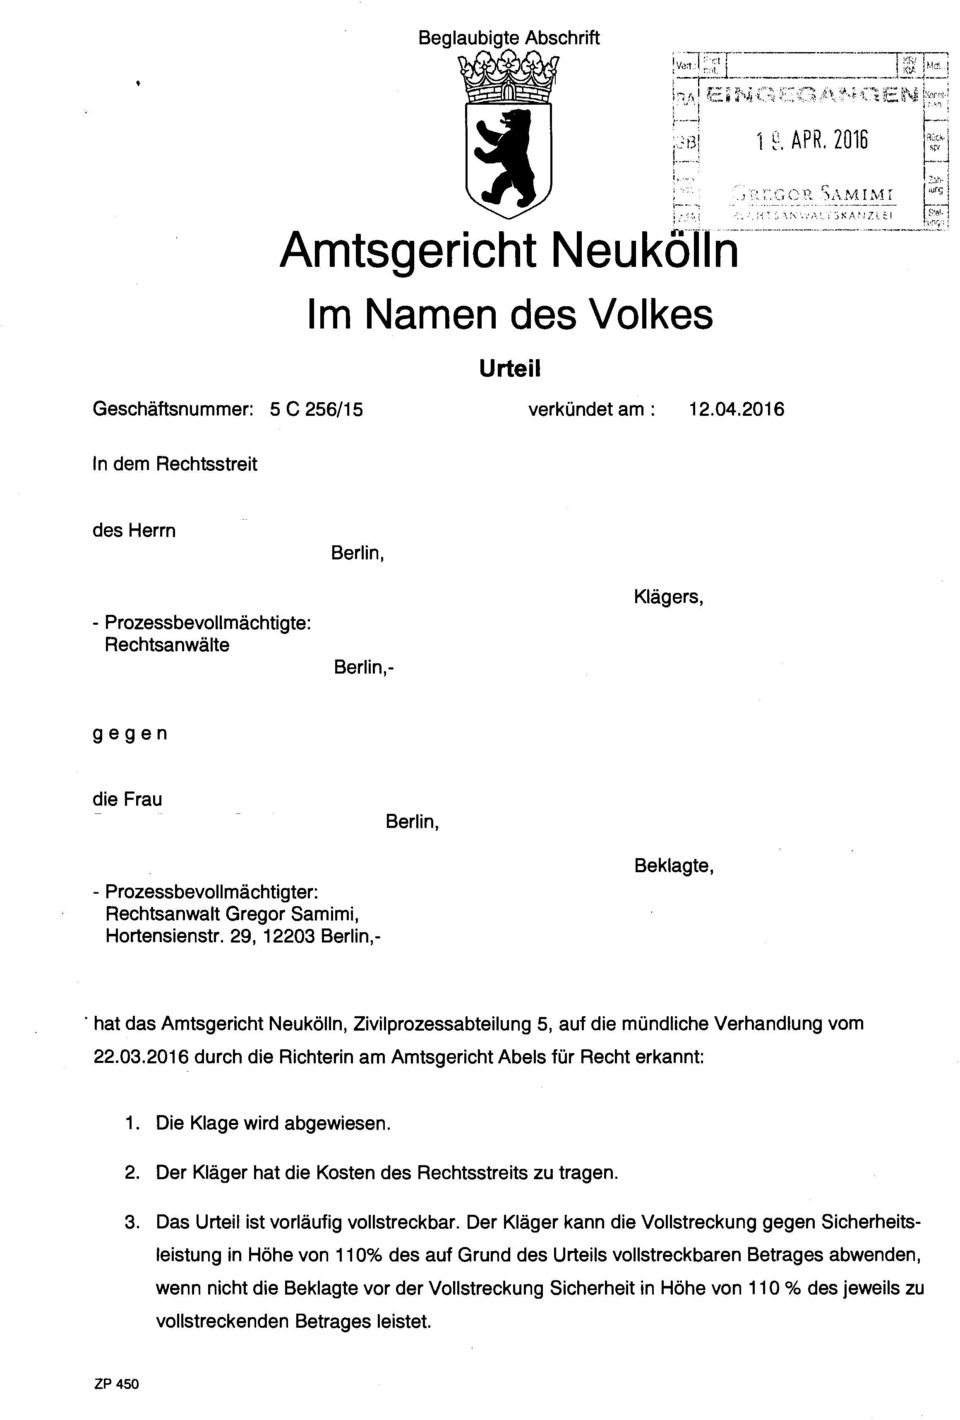 ksp/ Berlin,- Klägers, gegen die Frau Berlin, - Prozessbevollmächtigter: Rechtsanwalt Gregor Samimi, Hortensienstr.